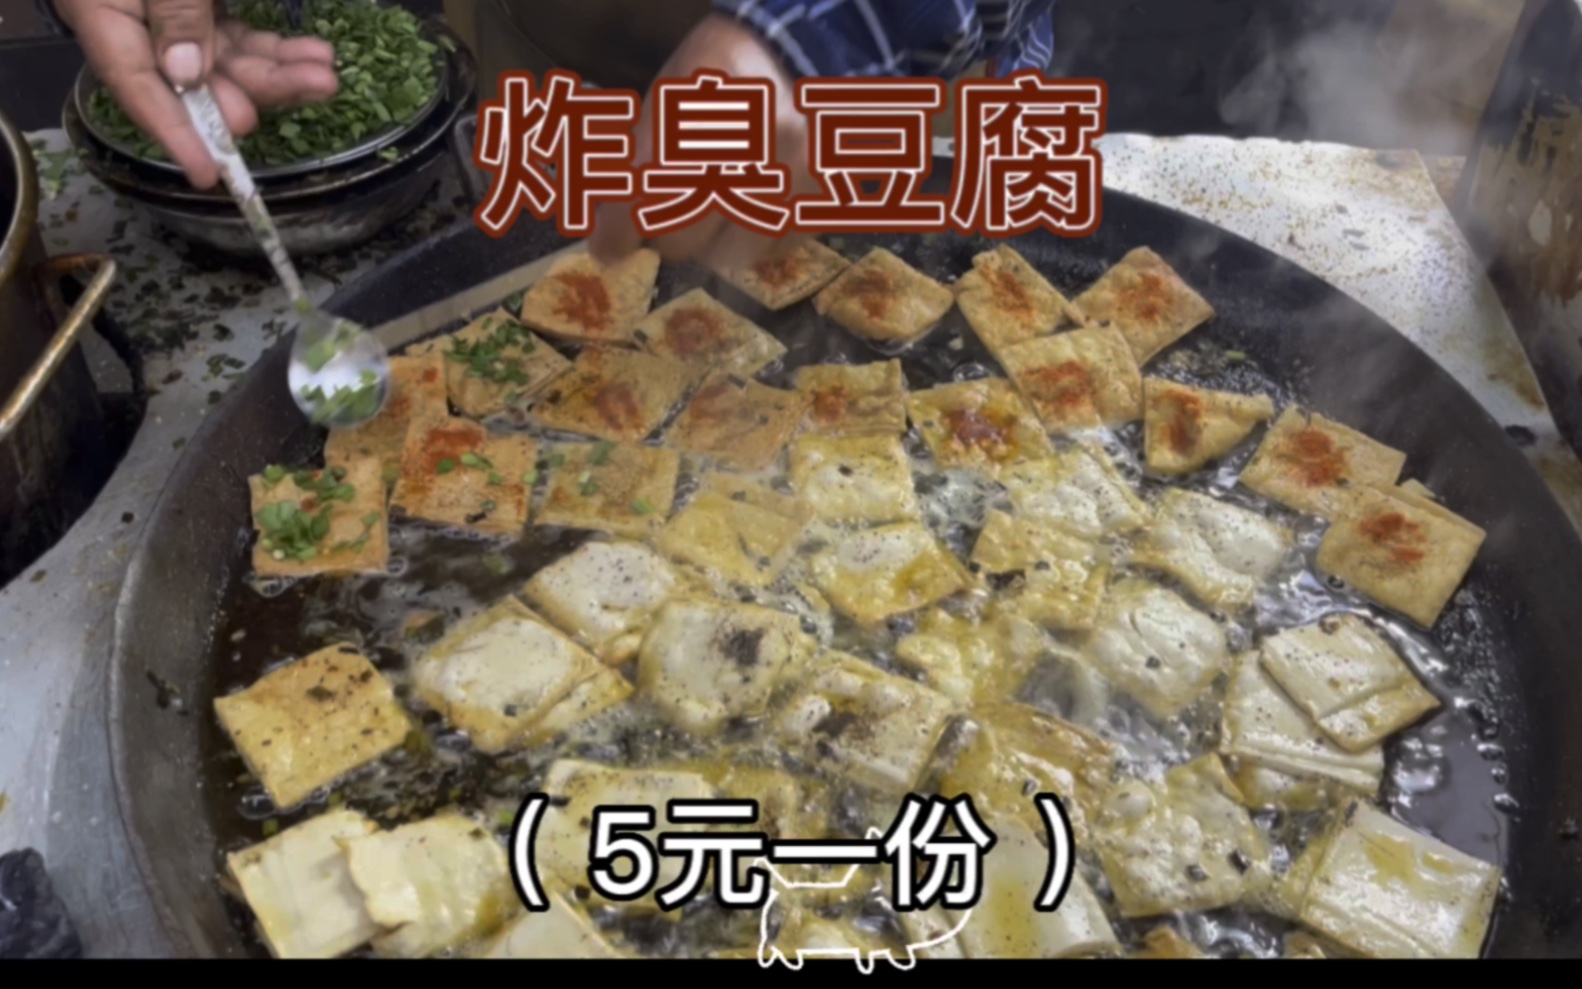 脆皮豆腐 Crispy Tofu